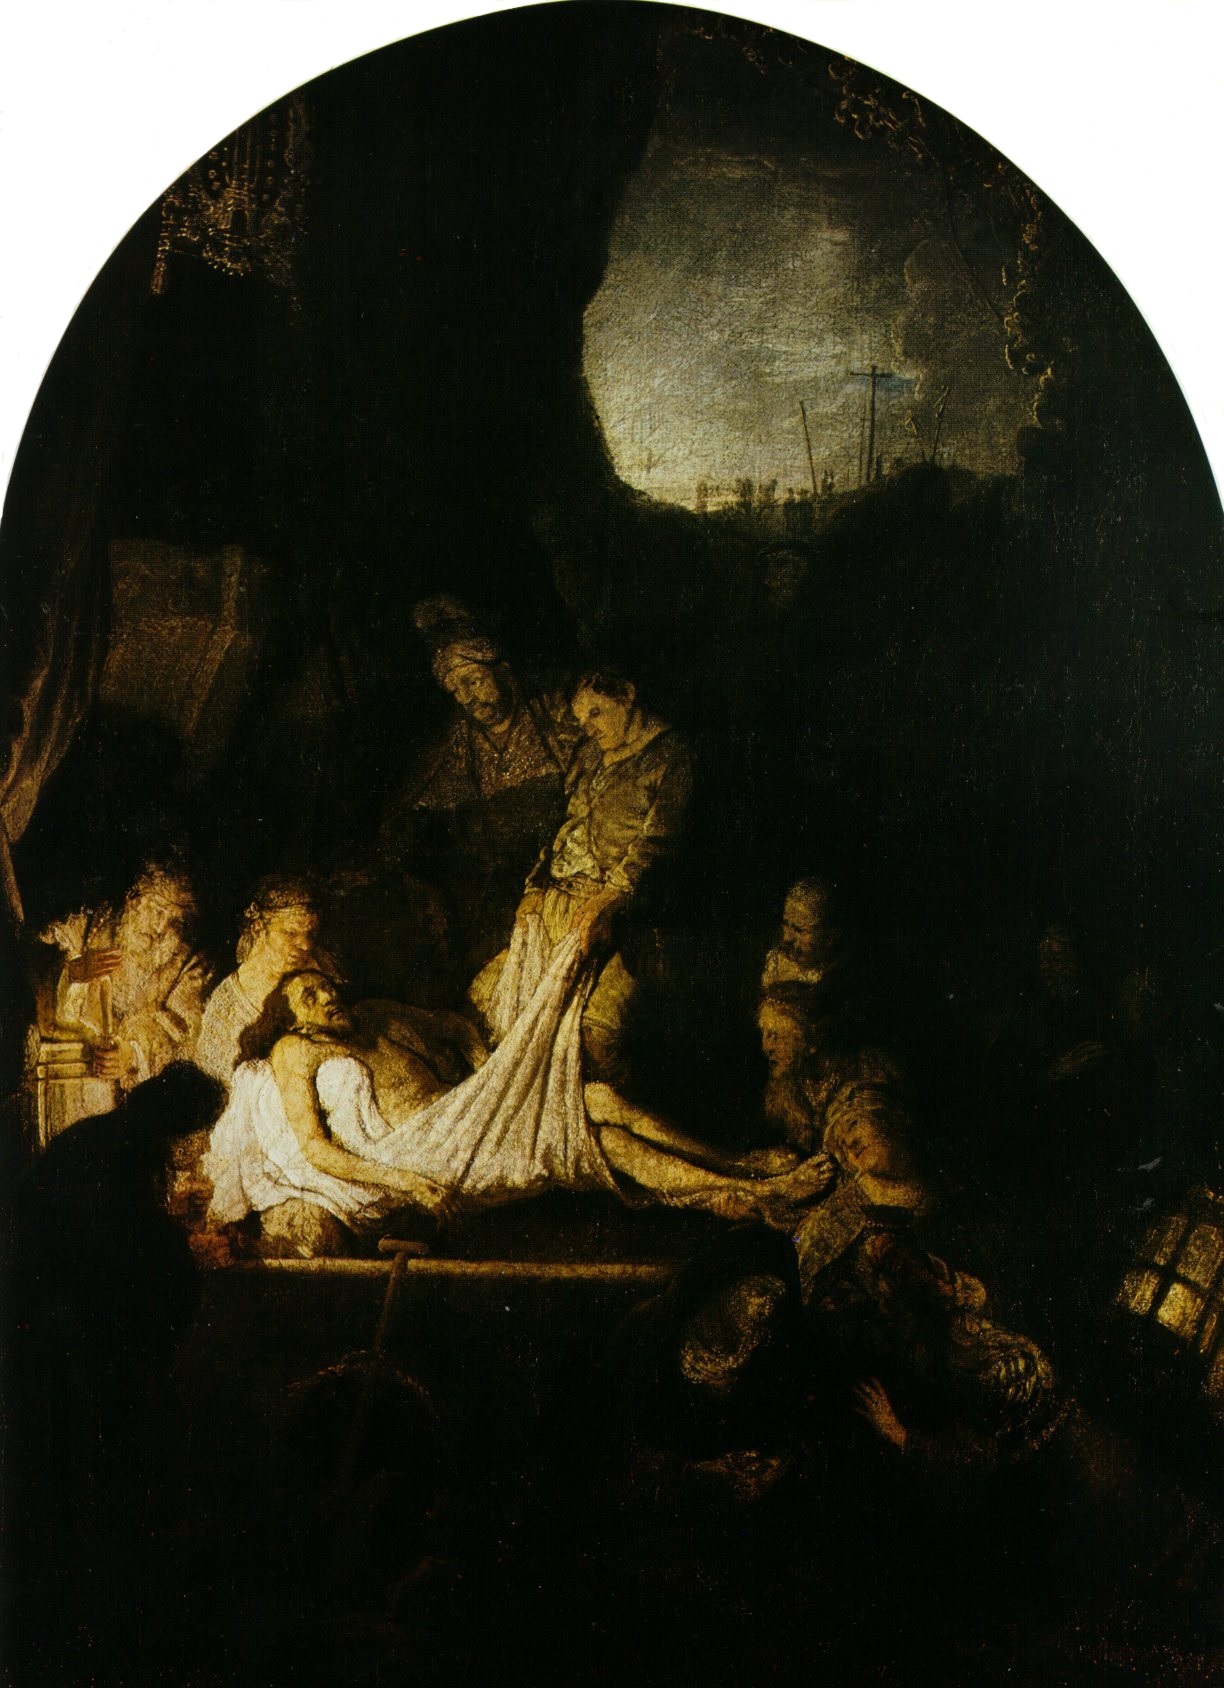 Рембрандт Харменс ван Рейн. "Положение во гроб". Около 1635-1639. Старая пинакотека, Мюнхен.